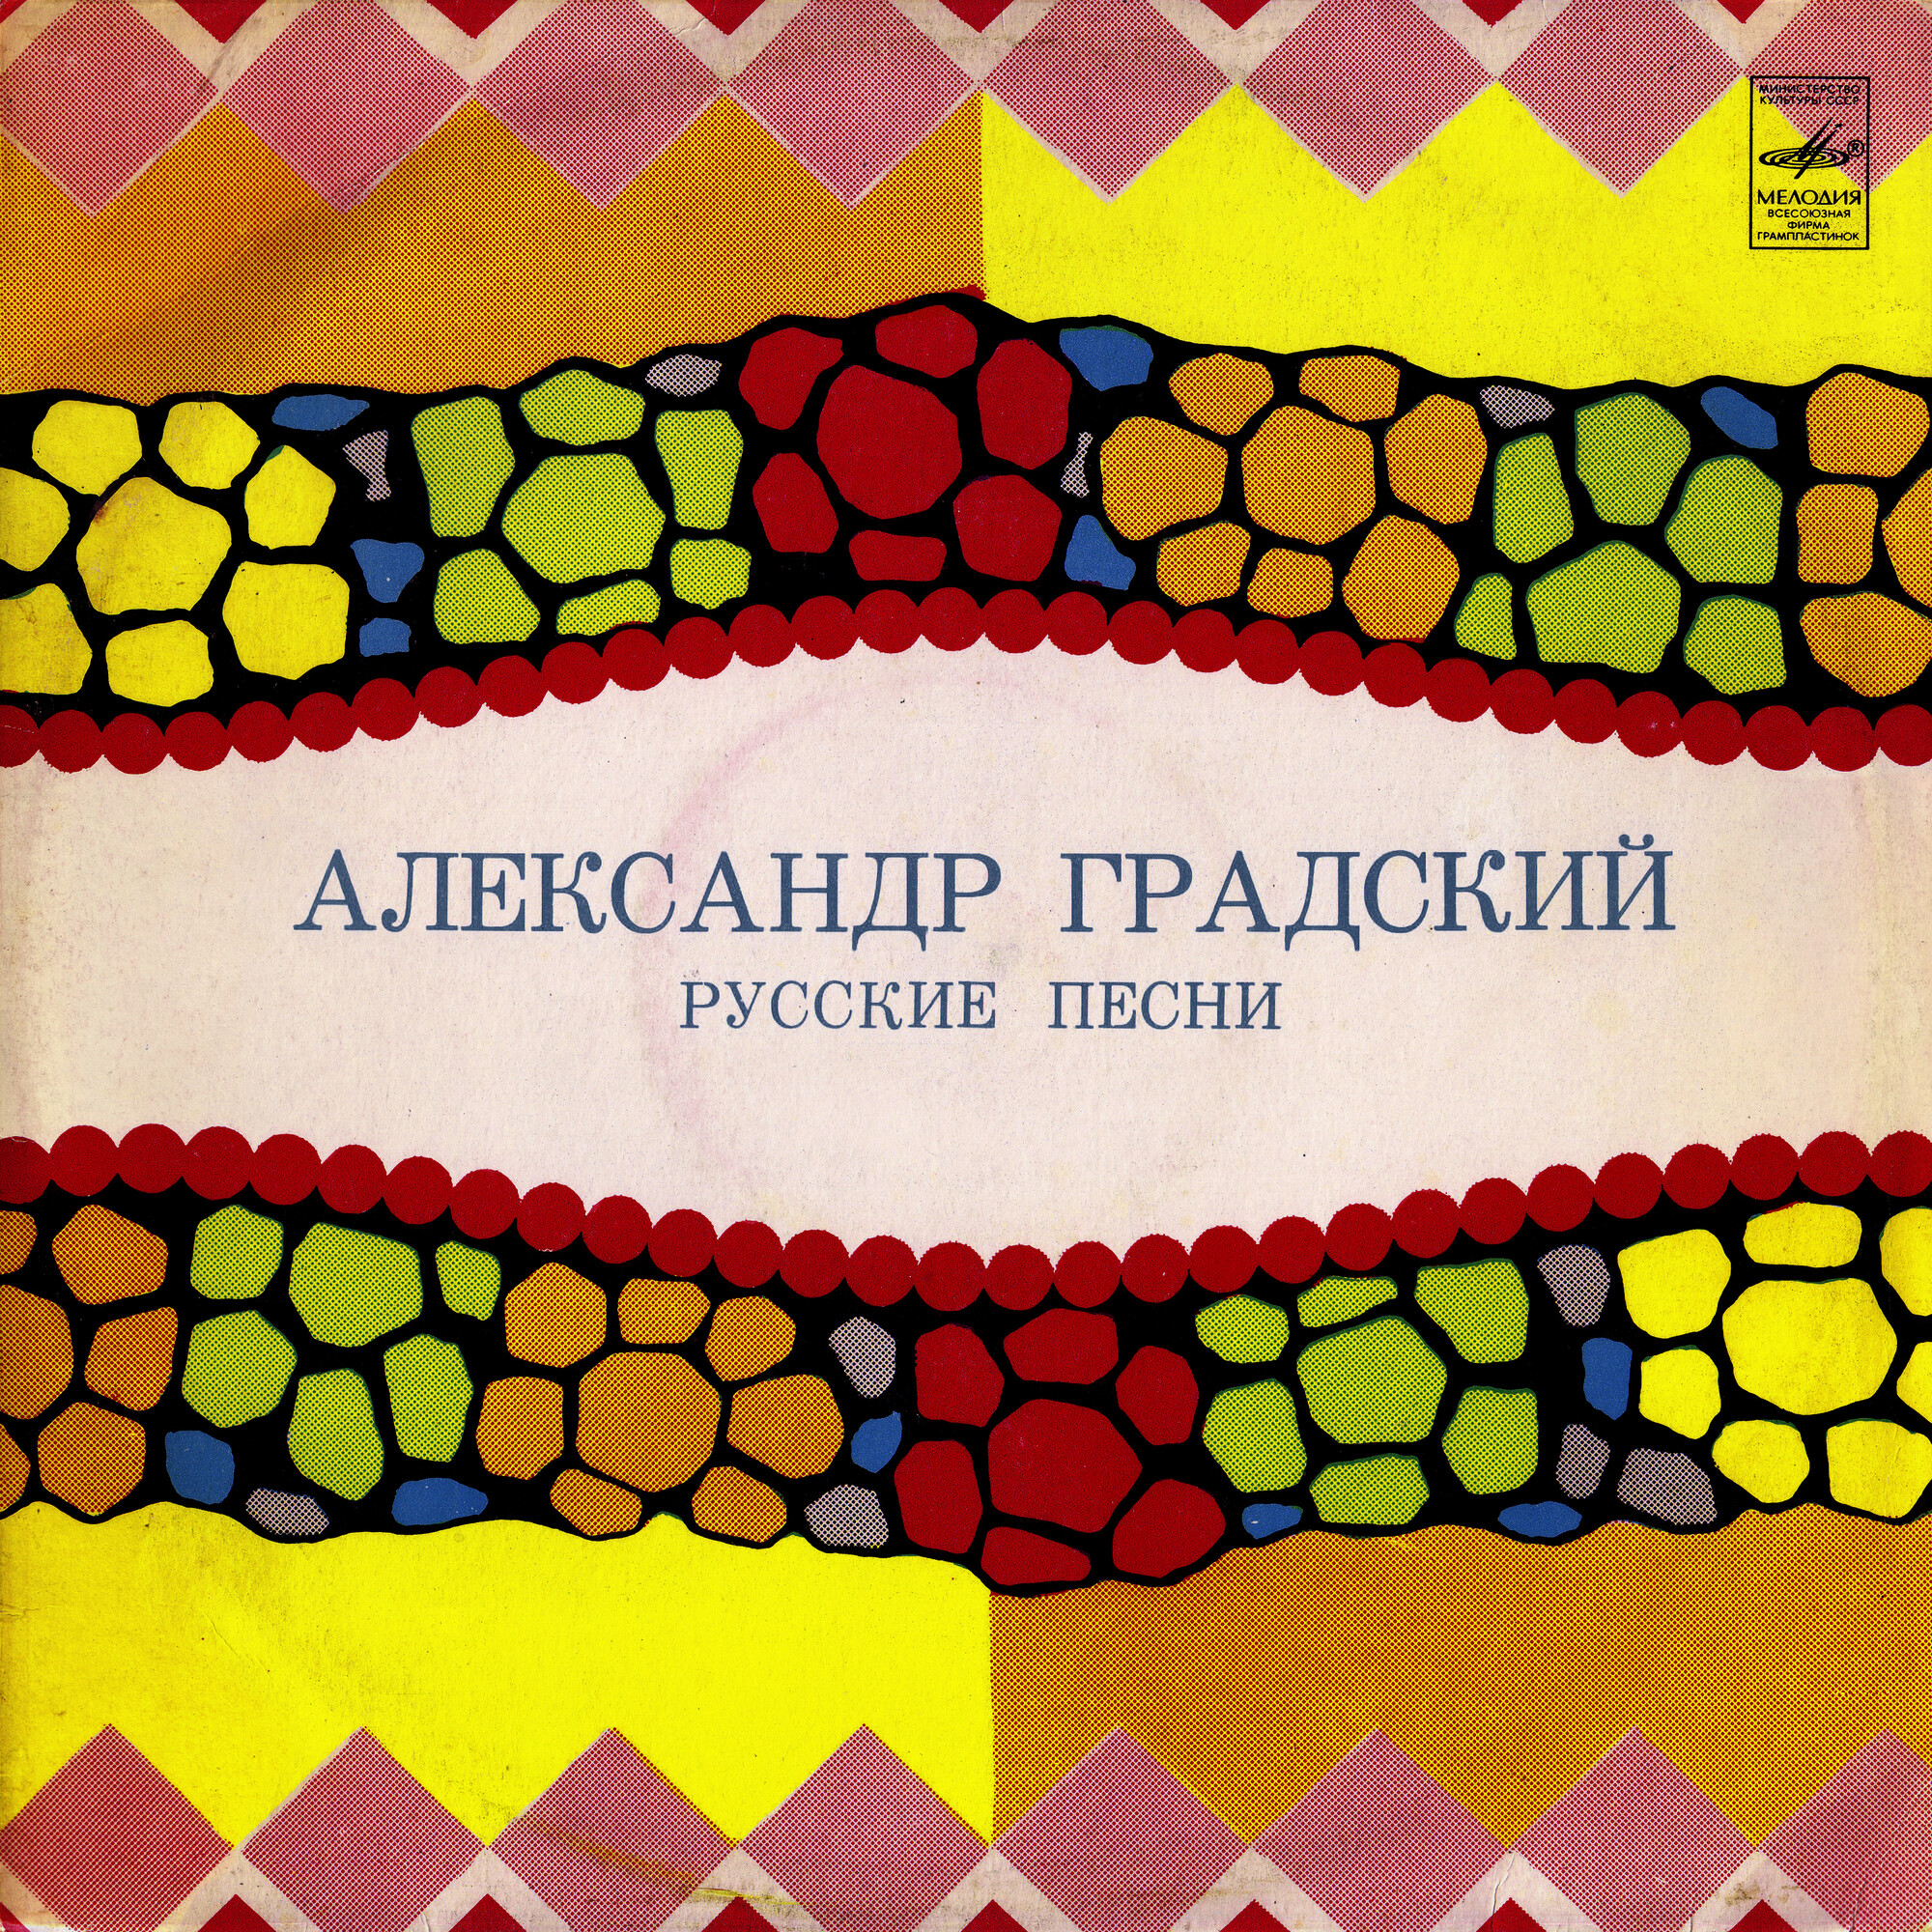 Александр Градский - Русские песни (сюита на темы народных песен)